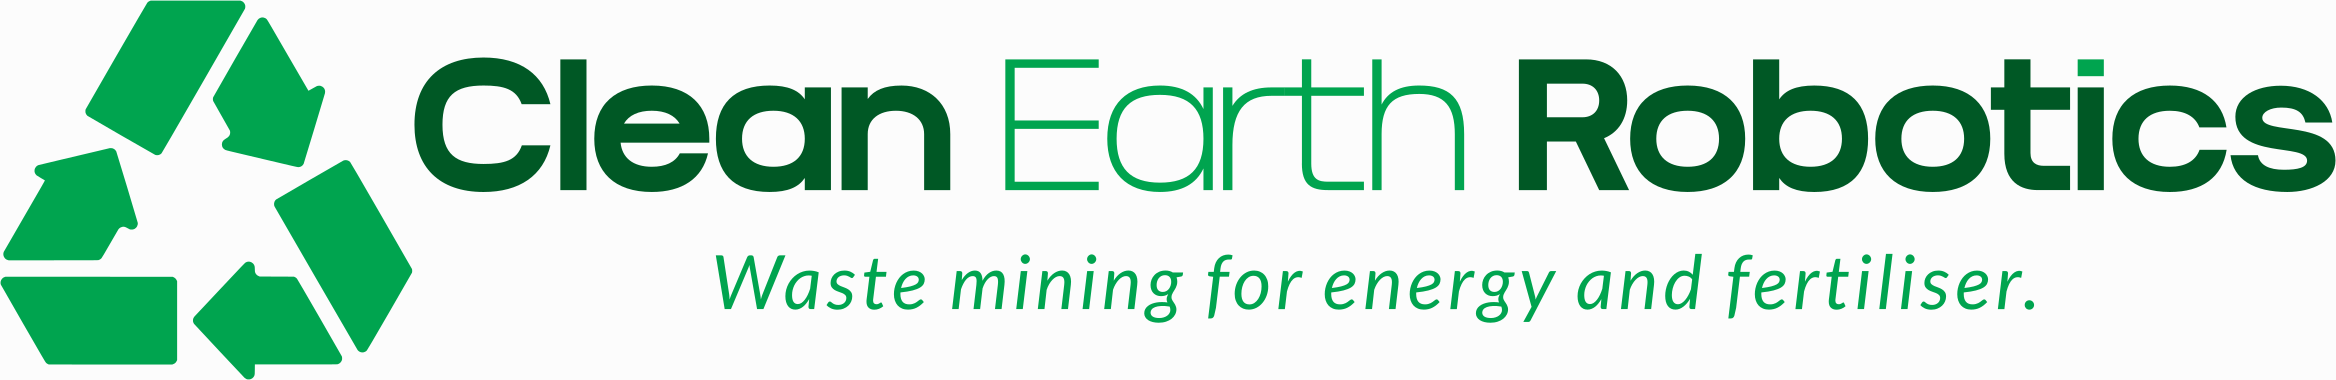 Clean Earth Robotics Logo